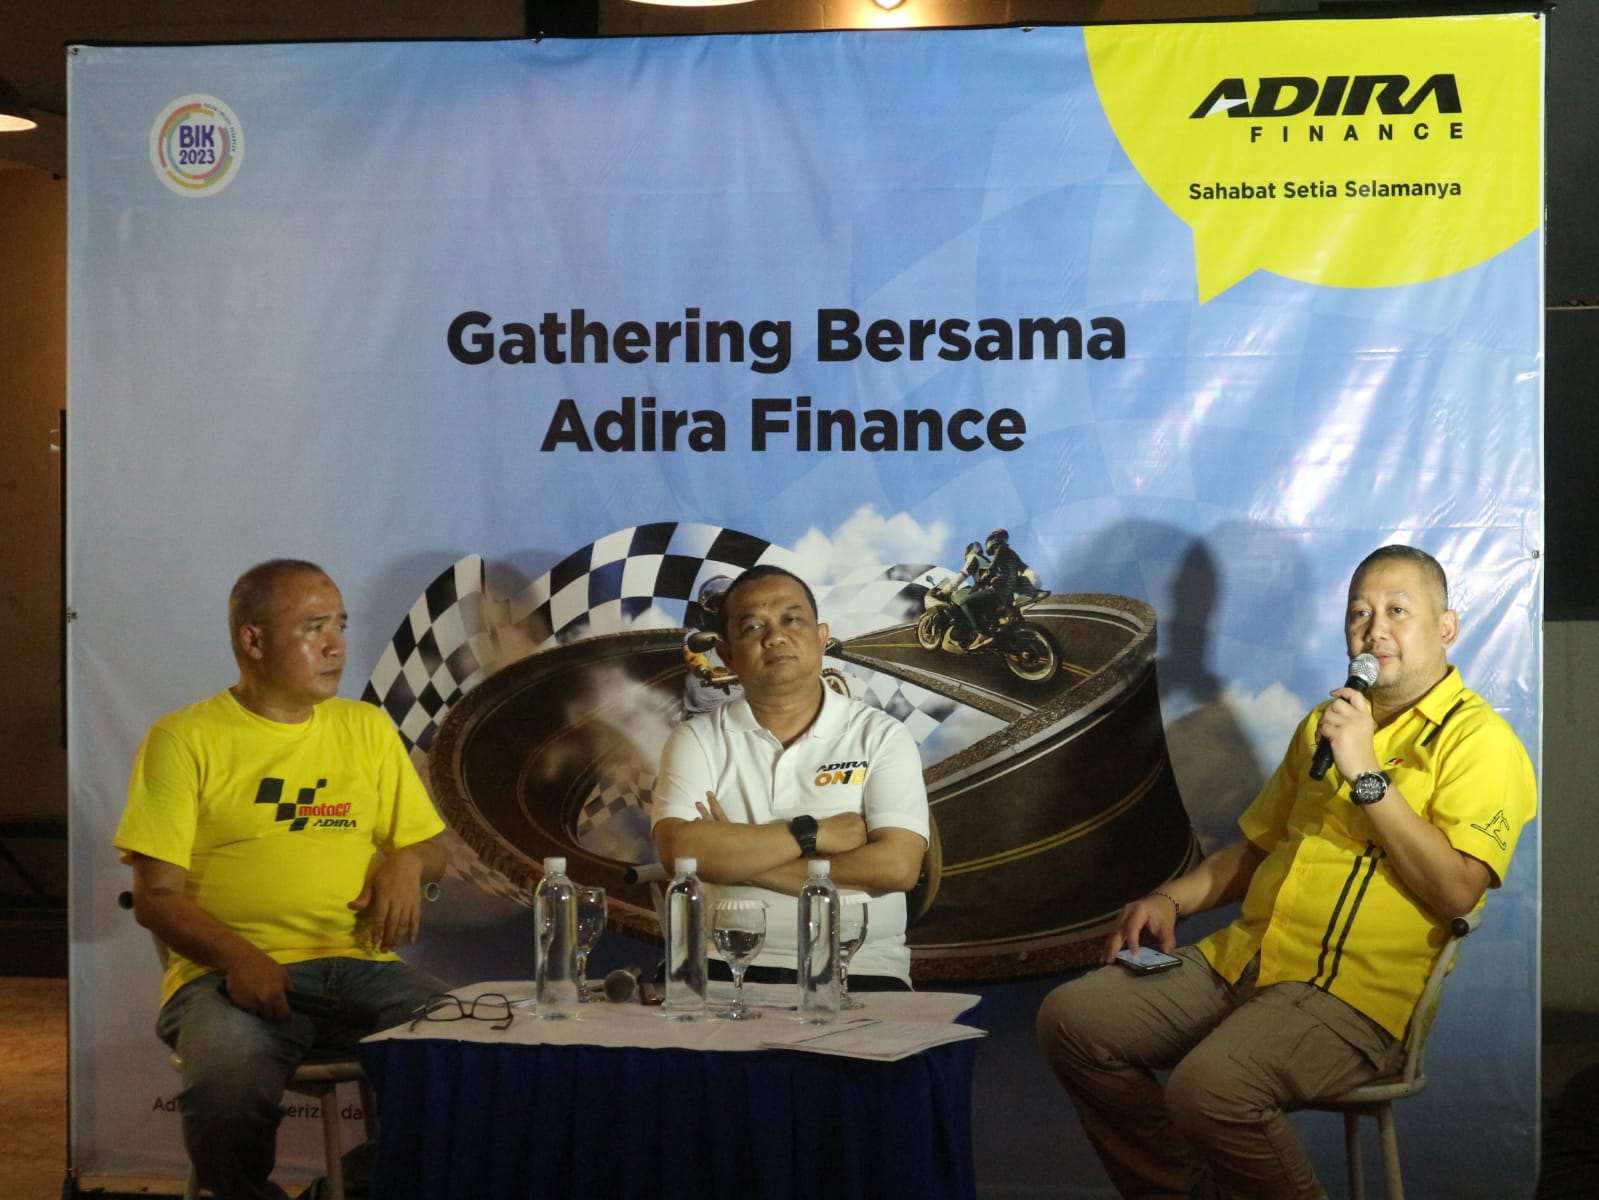 Pelanggan Adira Finance Cirebon Bisa Nonton Langsung MotoGP di Mandalika, Begini Caranya